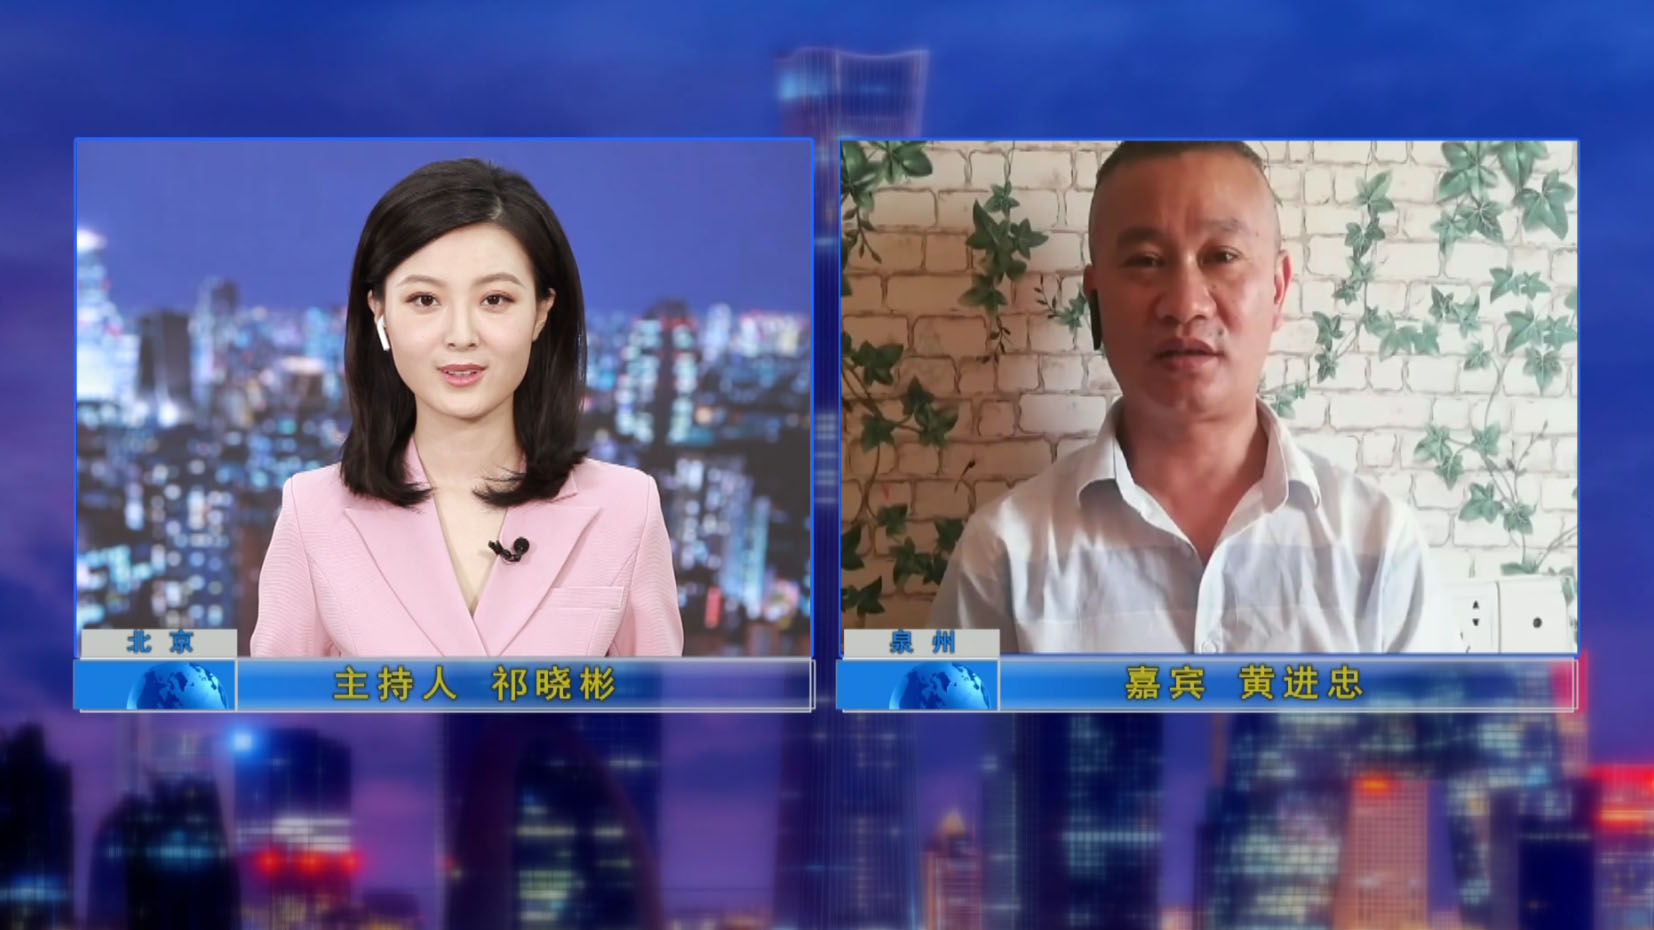 टीवी कार्यक्रम "क्रेडिट चीन" द्वारा महाप्रबंधक का साक्षात्कार लिया गया